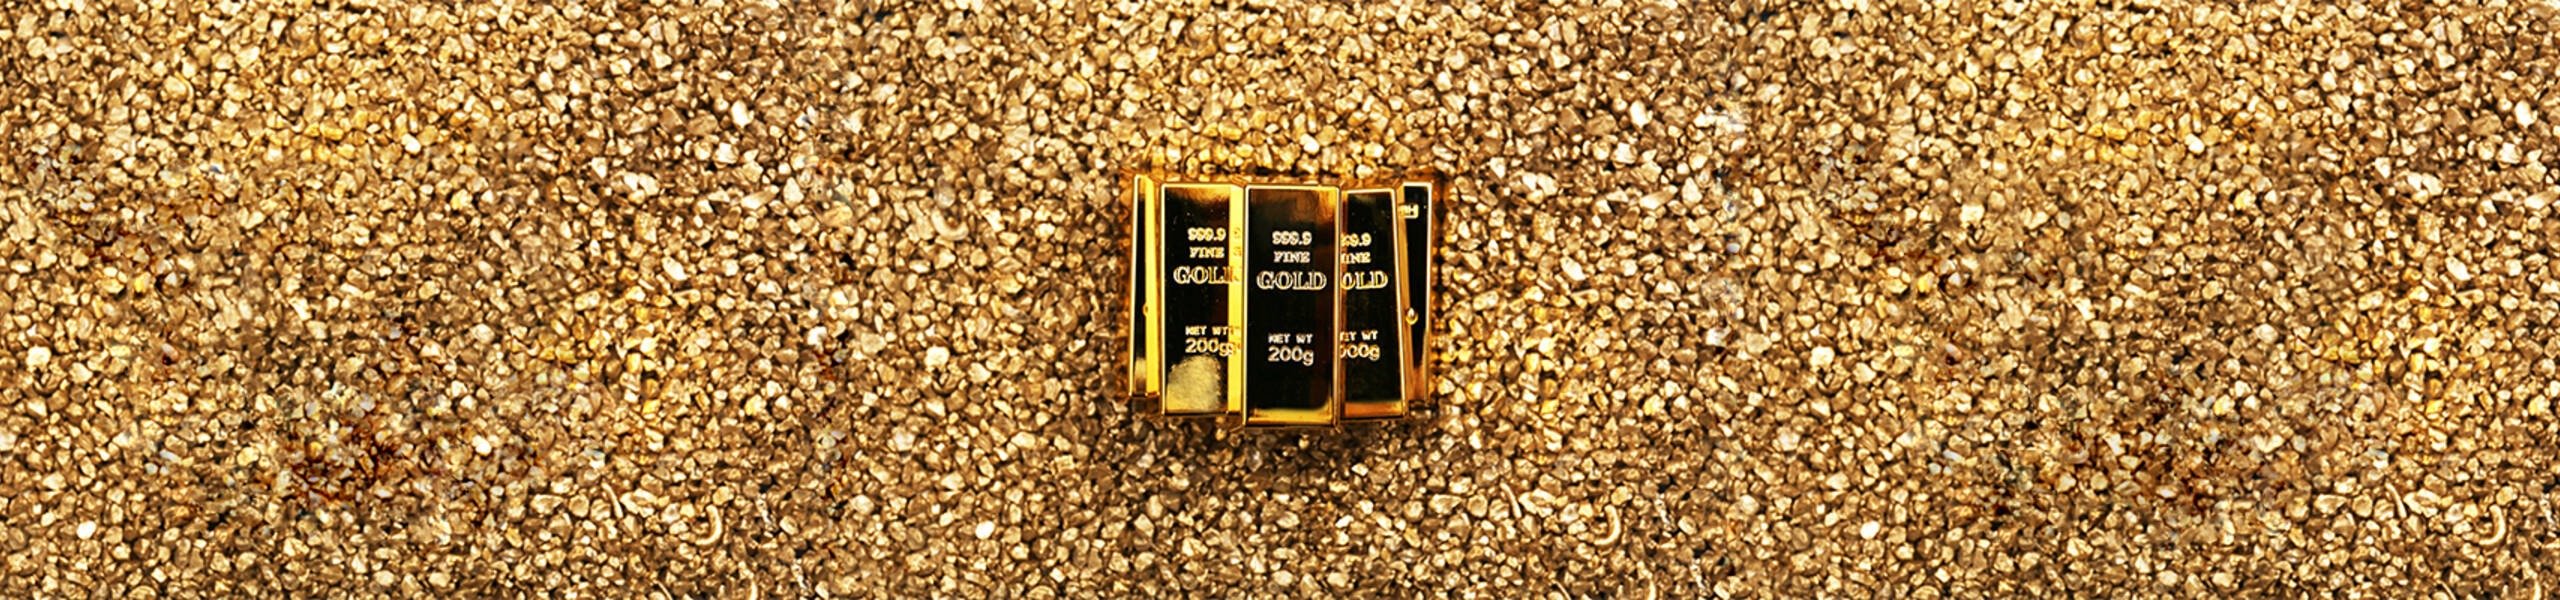 GOLD (SPOT) - pandangan ekonomi